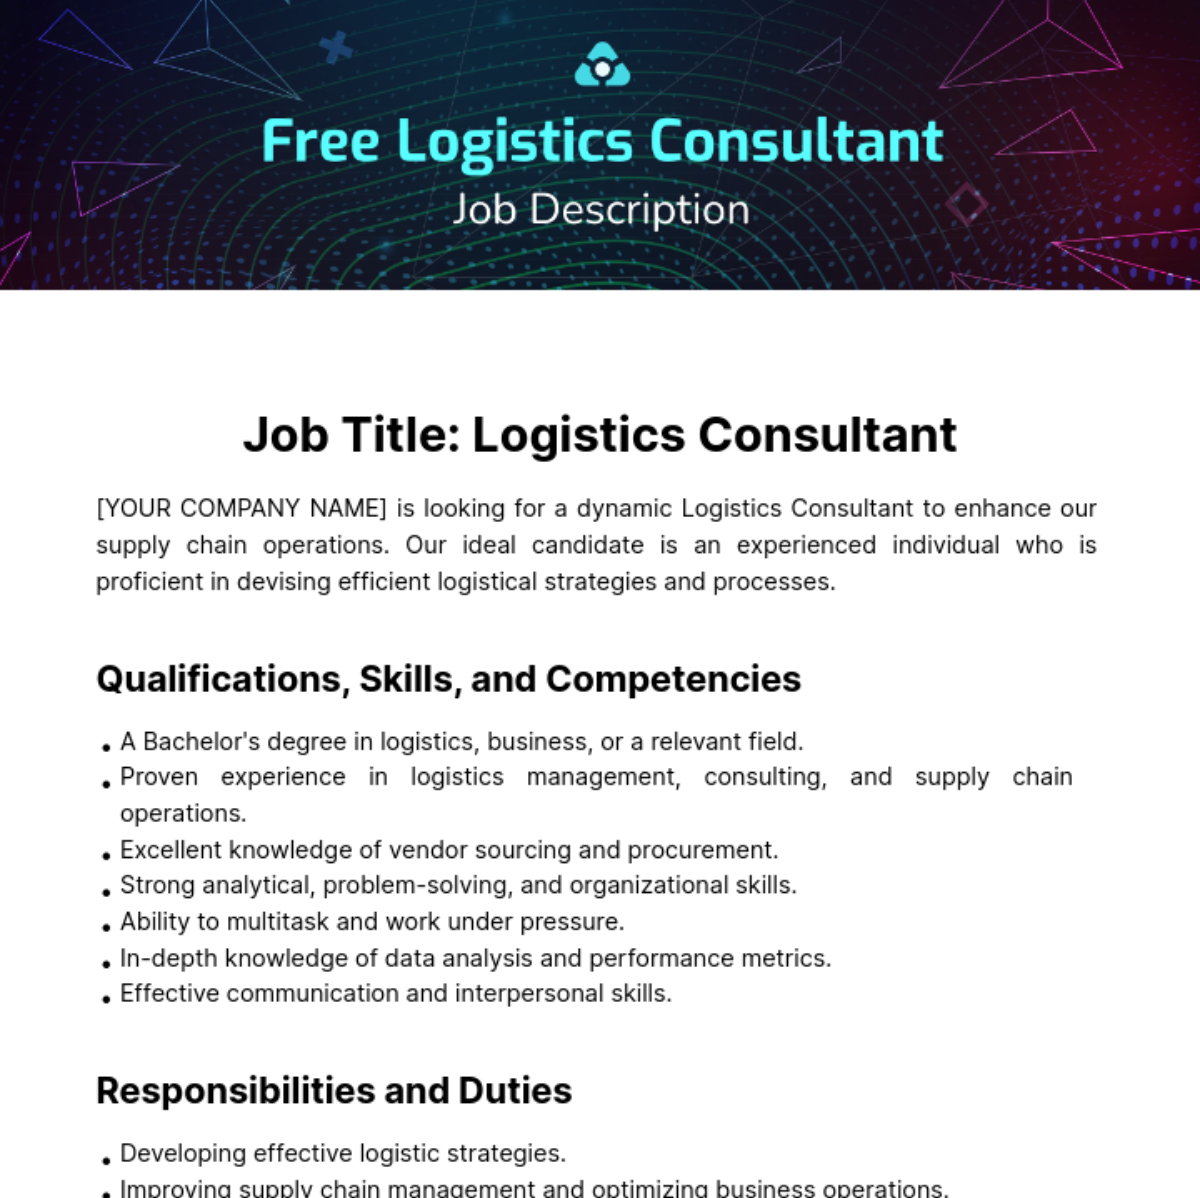 Free Logistics Consultant Job Description Template